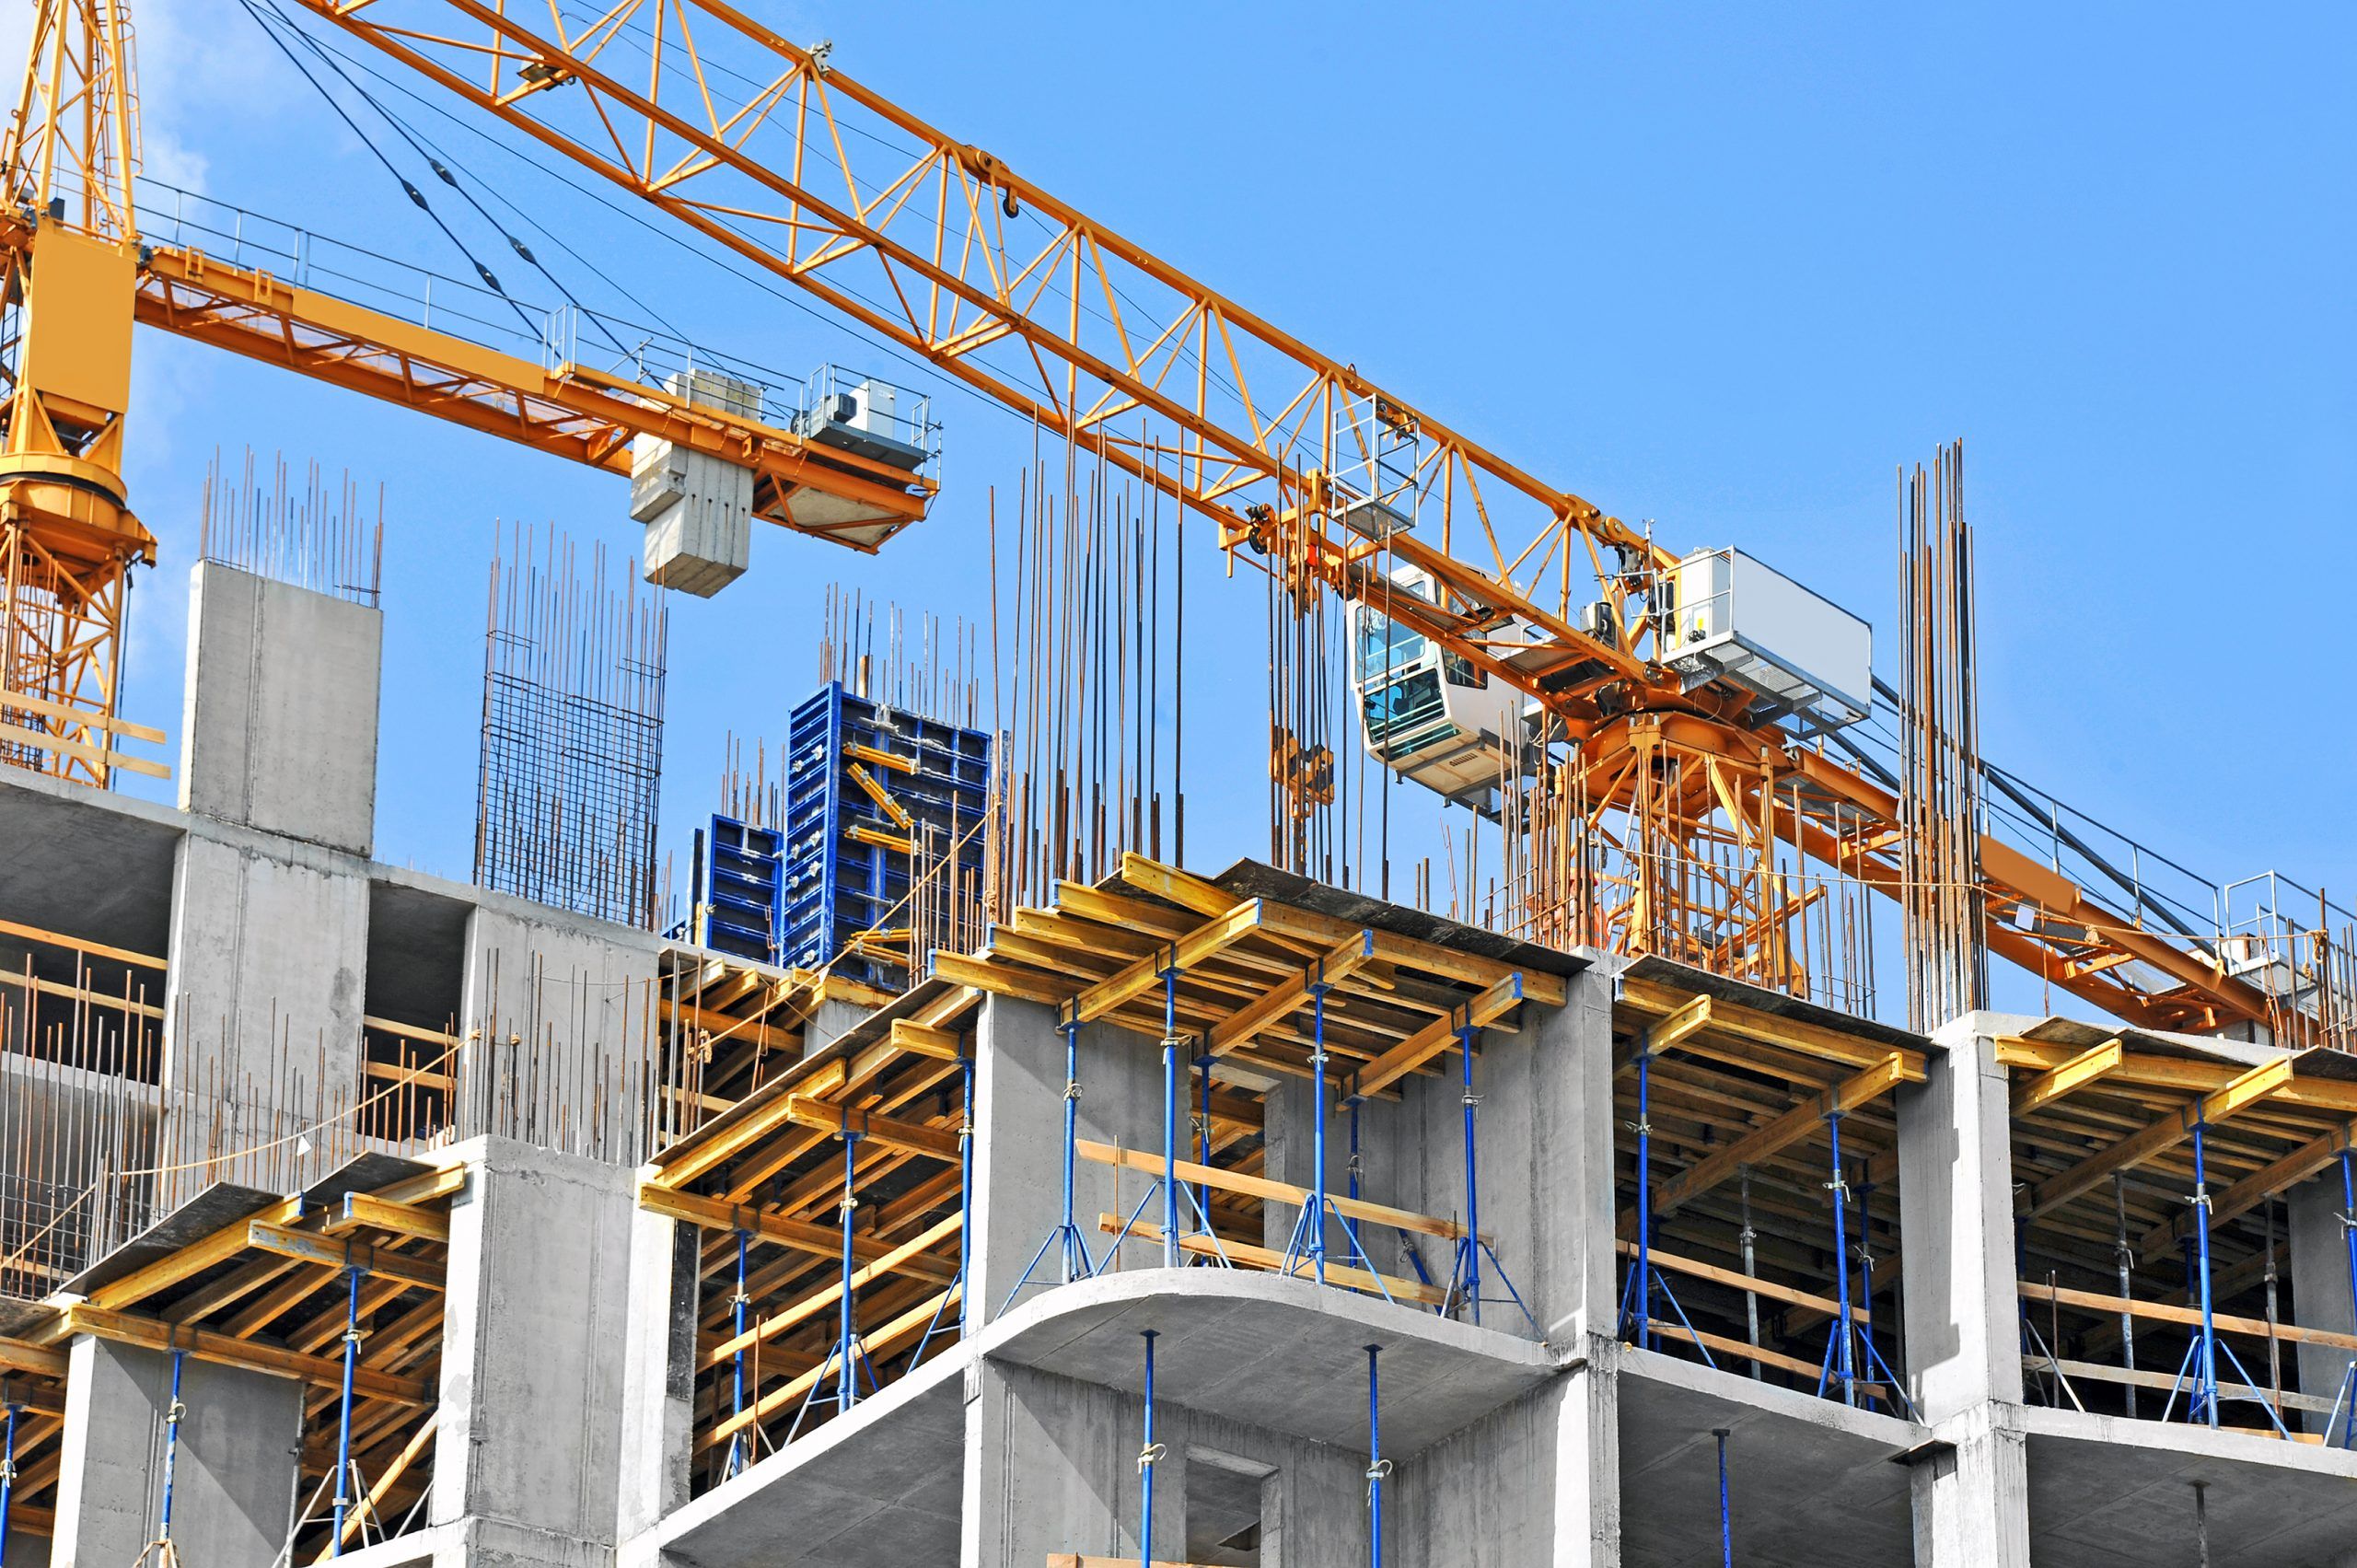 Custo da construção civil cresce 2,3% em abril